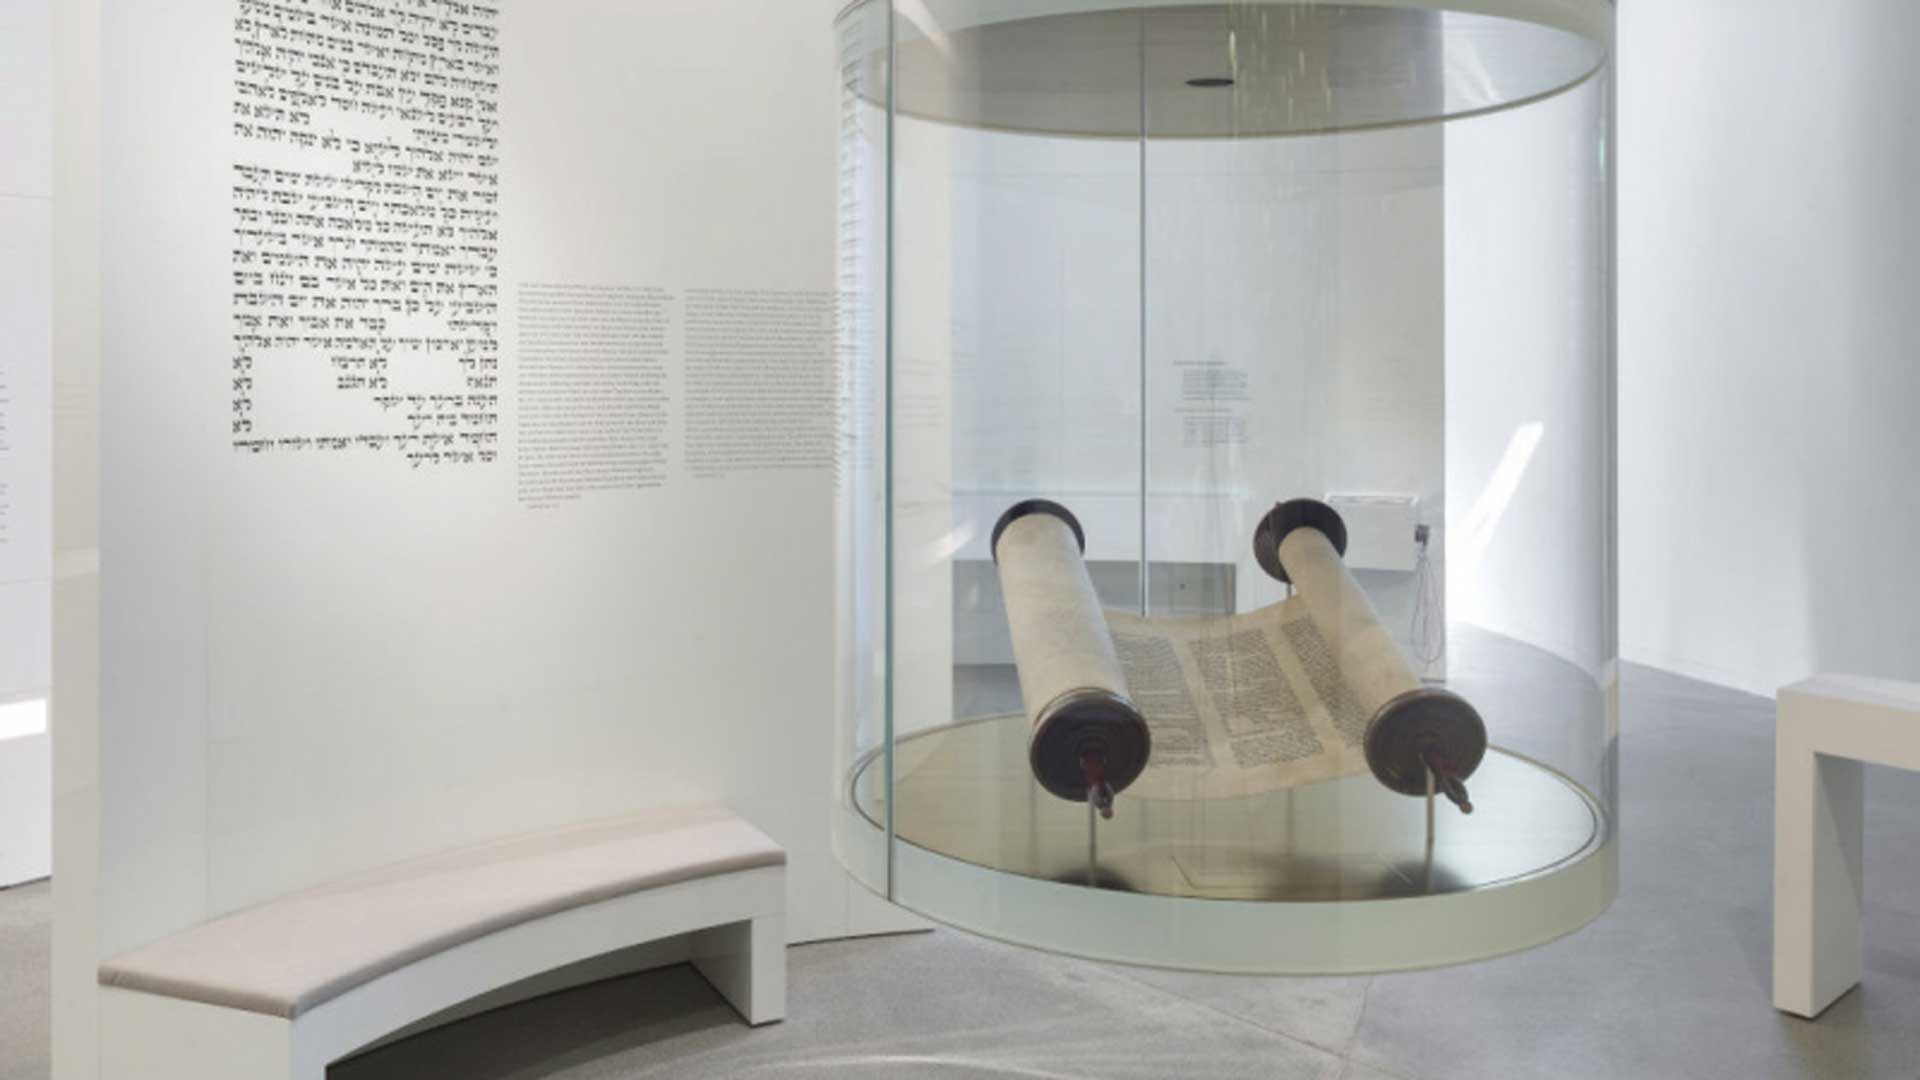 Eine Tora-Rolle ist in einer Museumsvitrine ausgestellt, auf der weißen Wand im Hintergrund steht ein hebräischer Text.